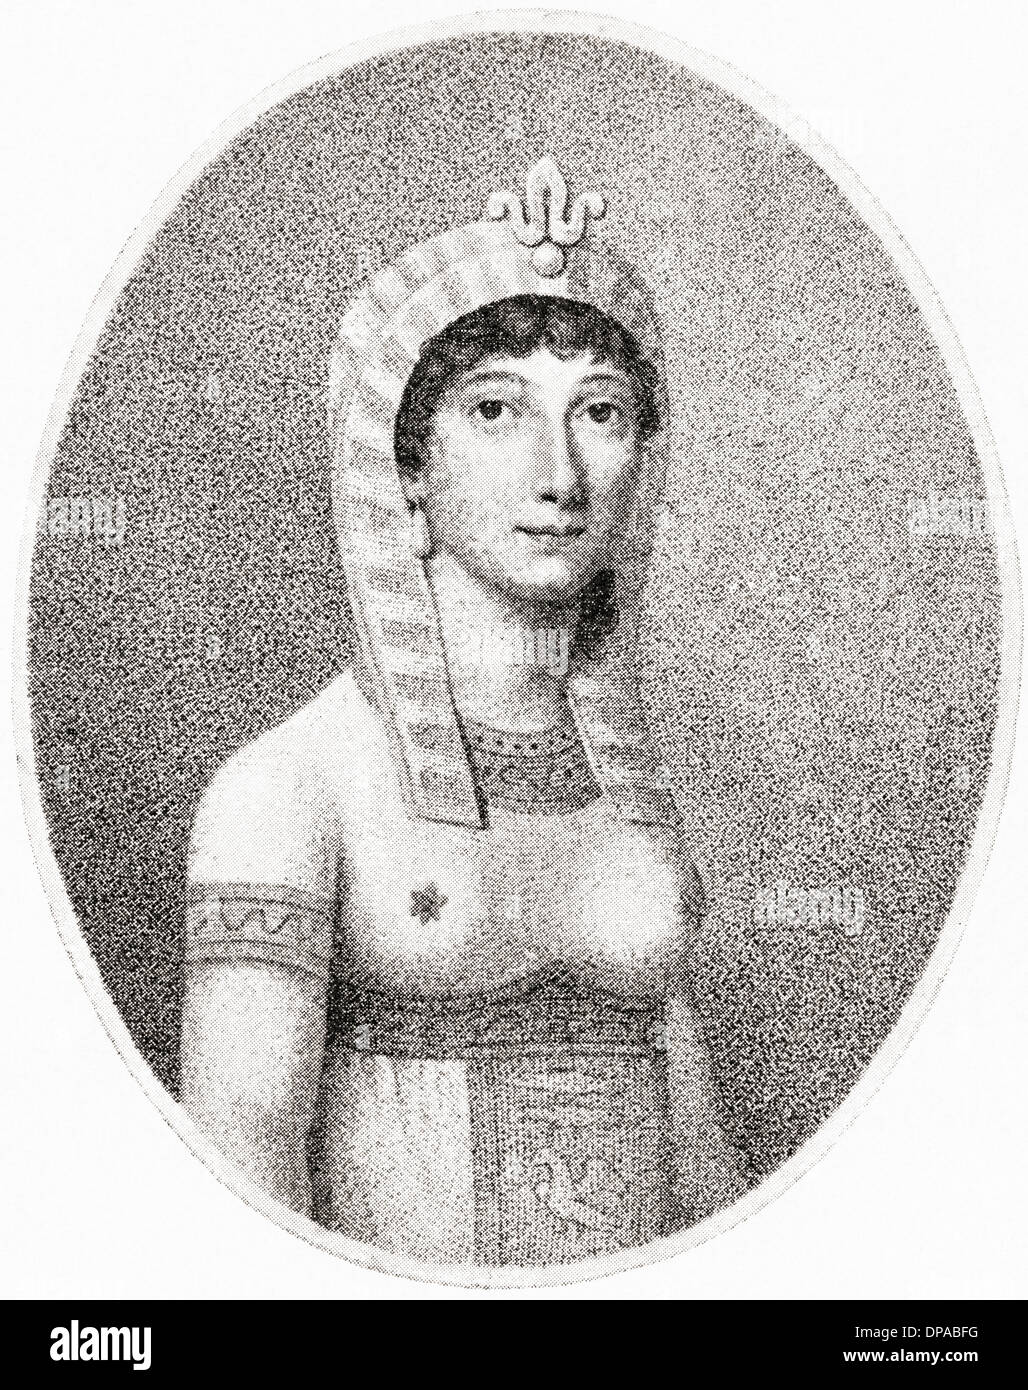 Angelica Catalini in the opera 'La Morte di Semiramide' by Portogallo. Angelica Catalani, 1780 – 1849. Italian opera singer. Stock Photo